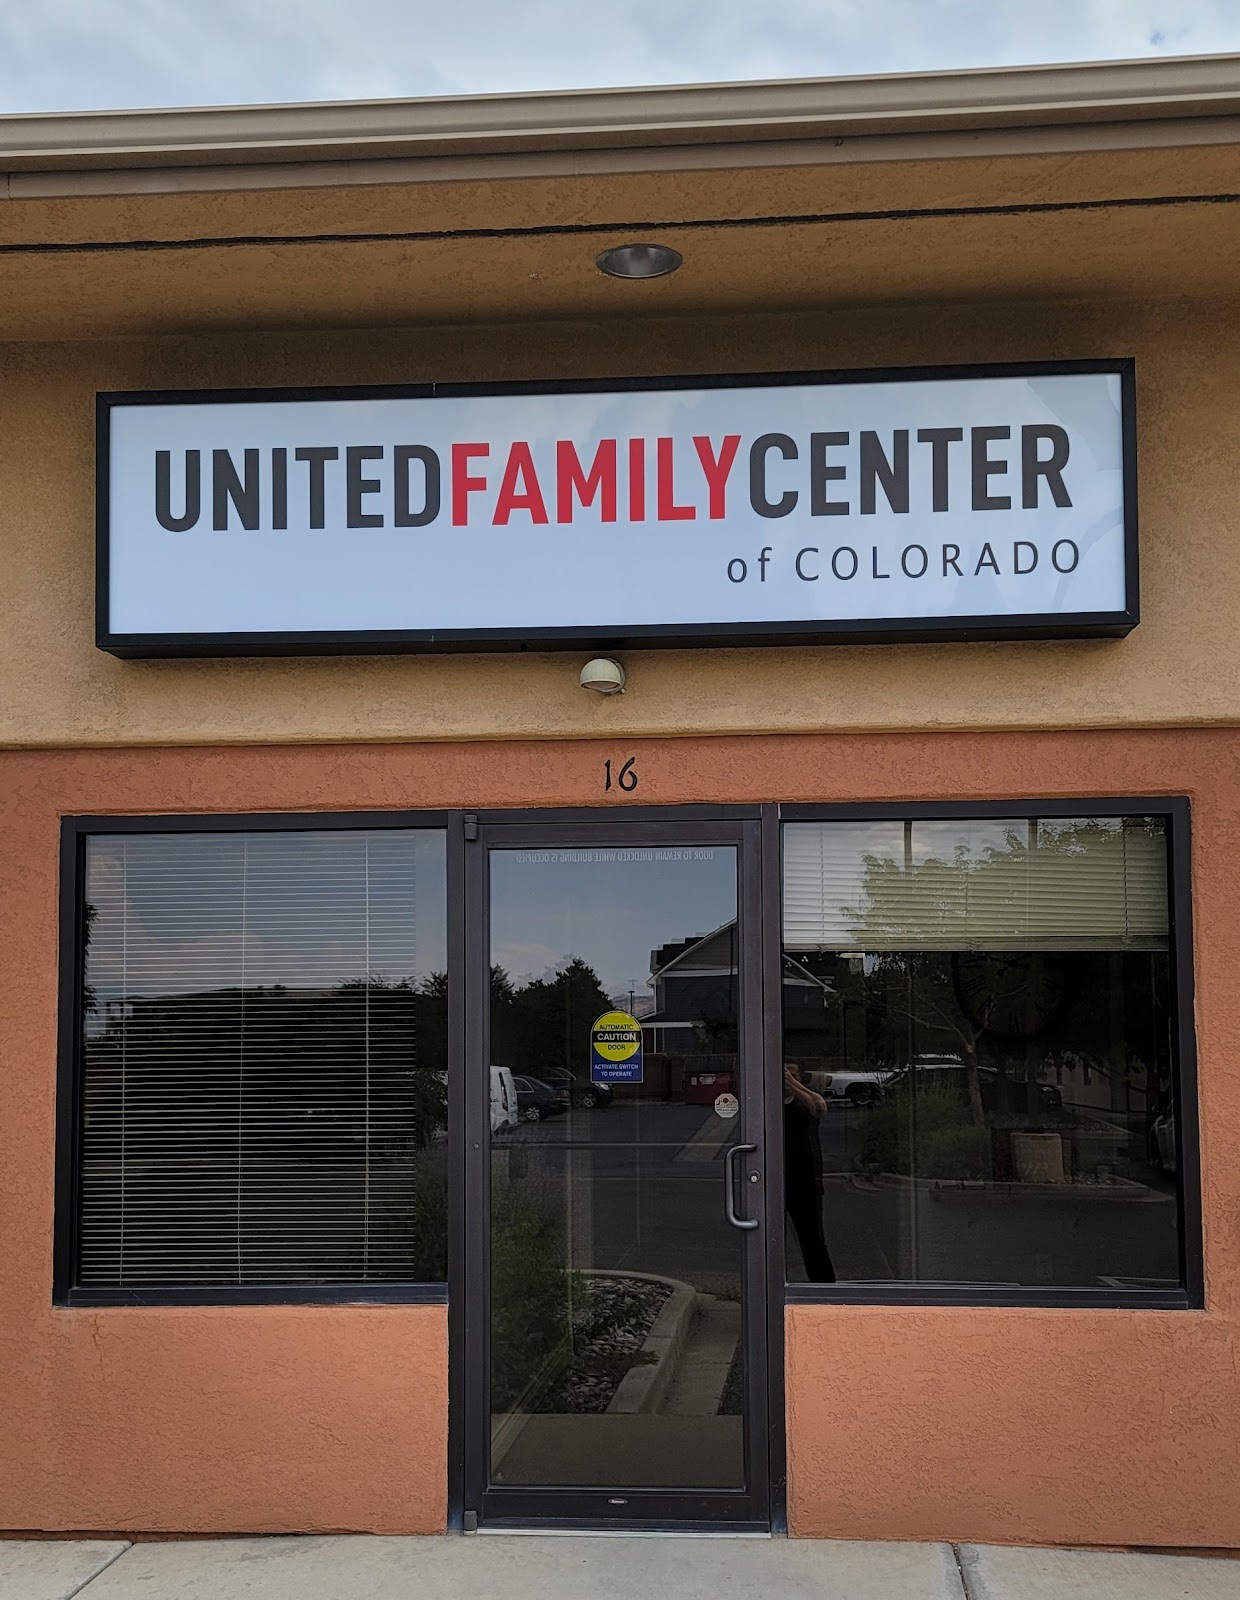 United Family Center of Colorado